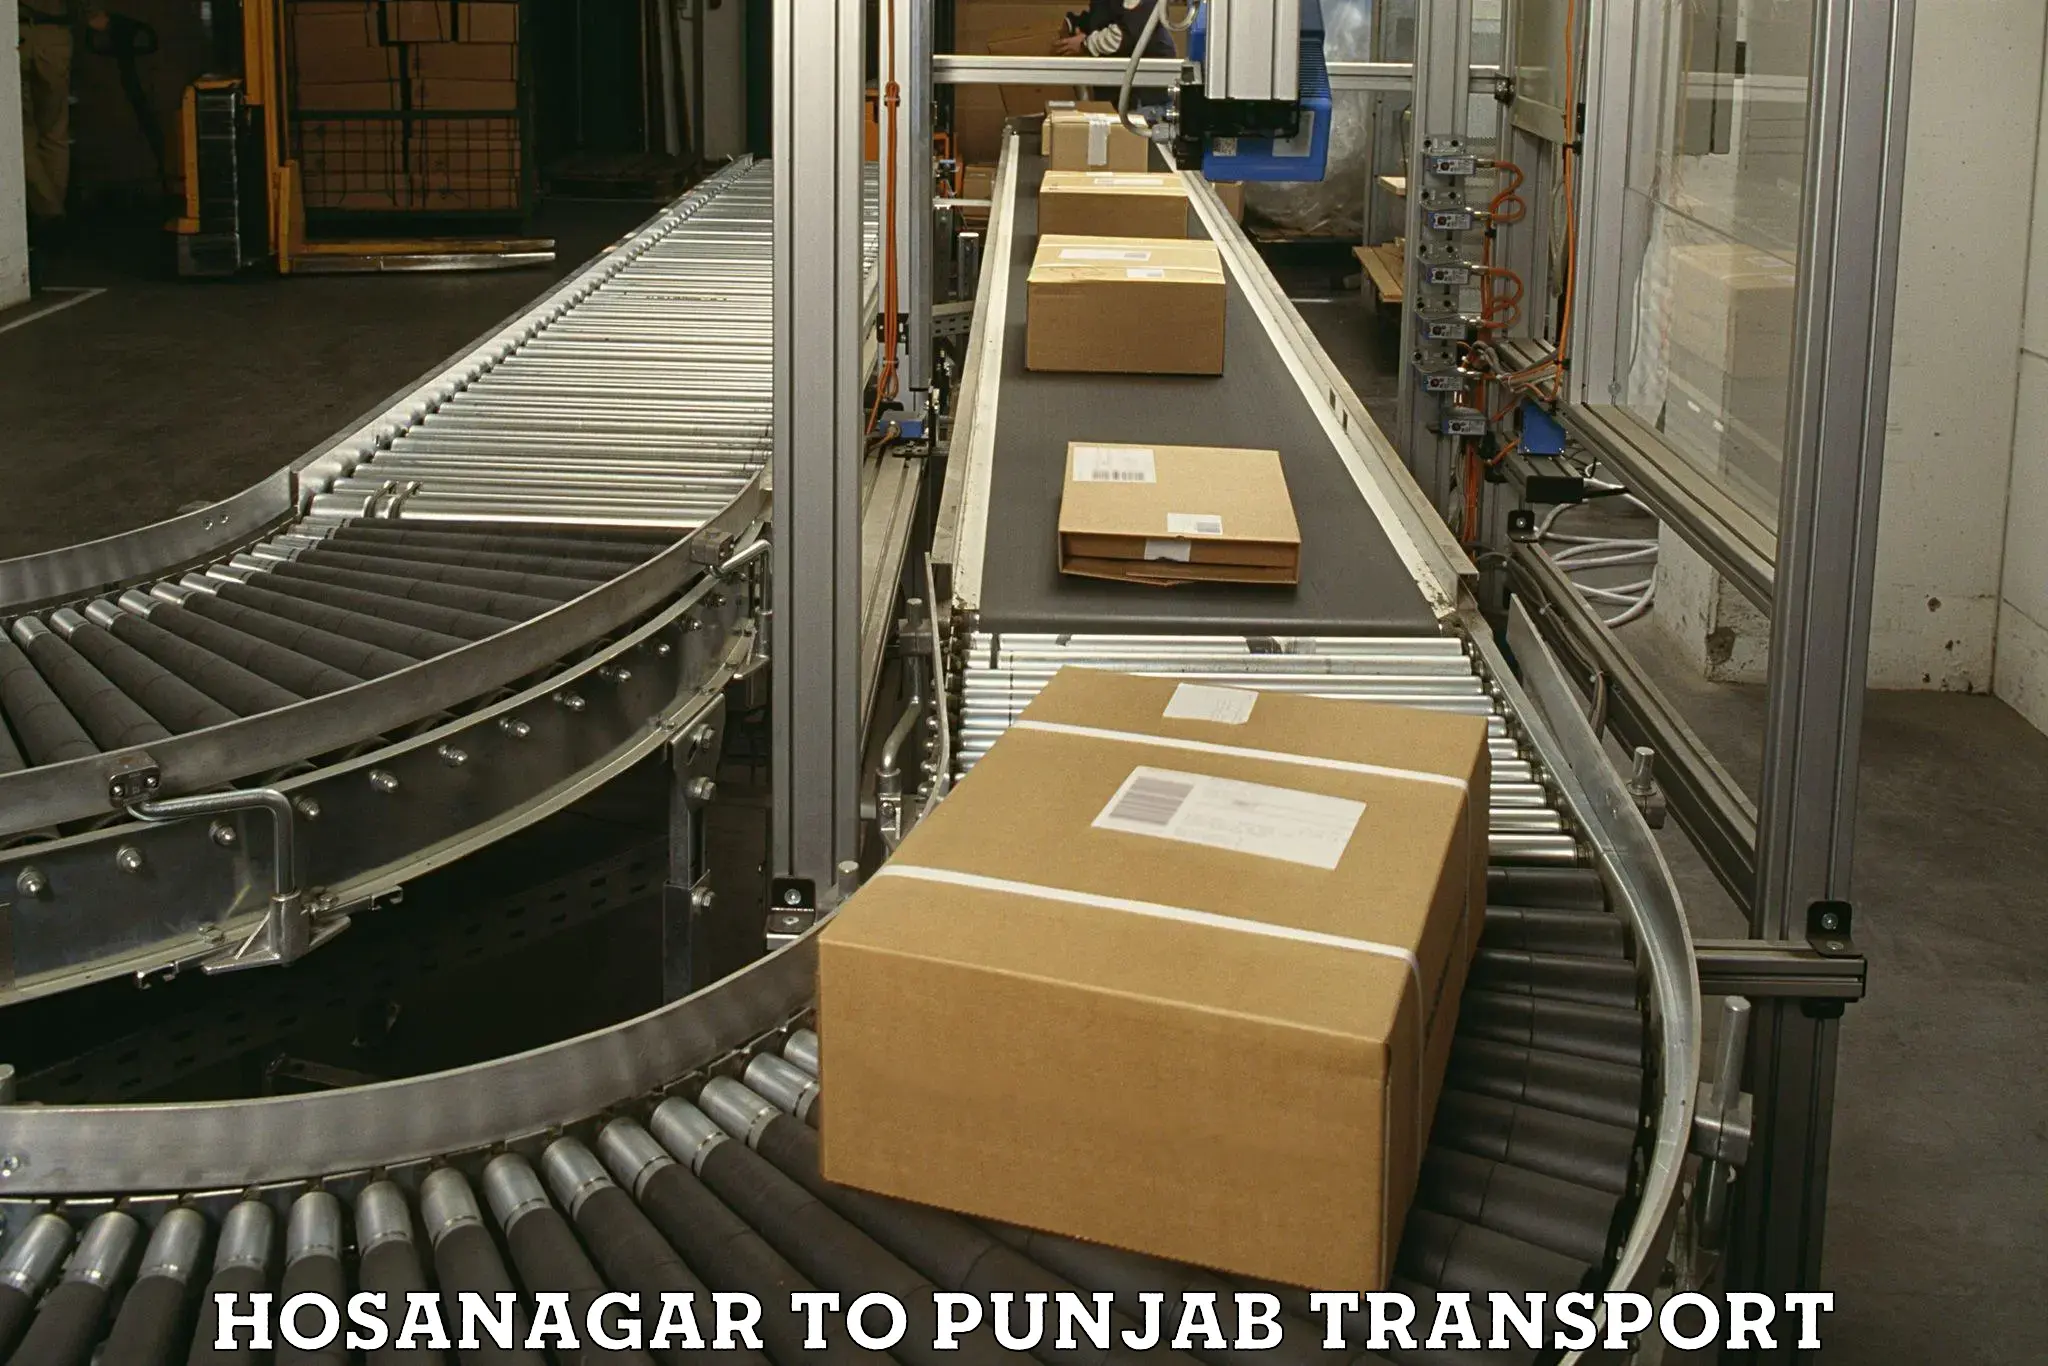 Interstate transport services Hosanagar to Amritsar